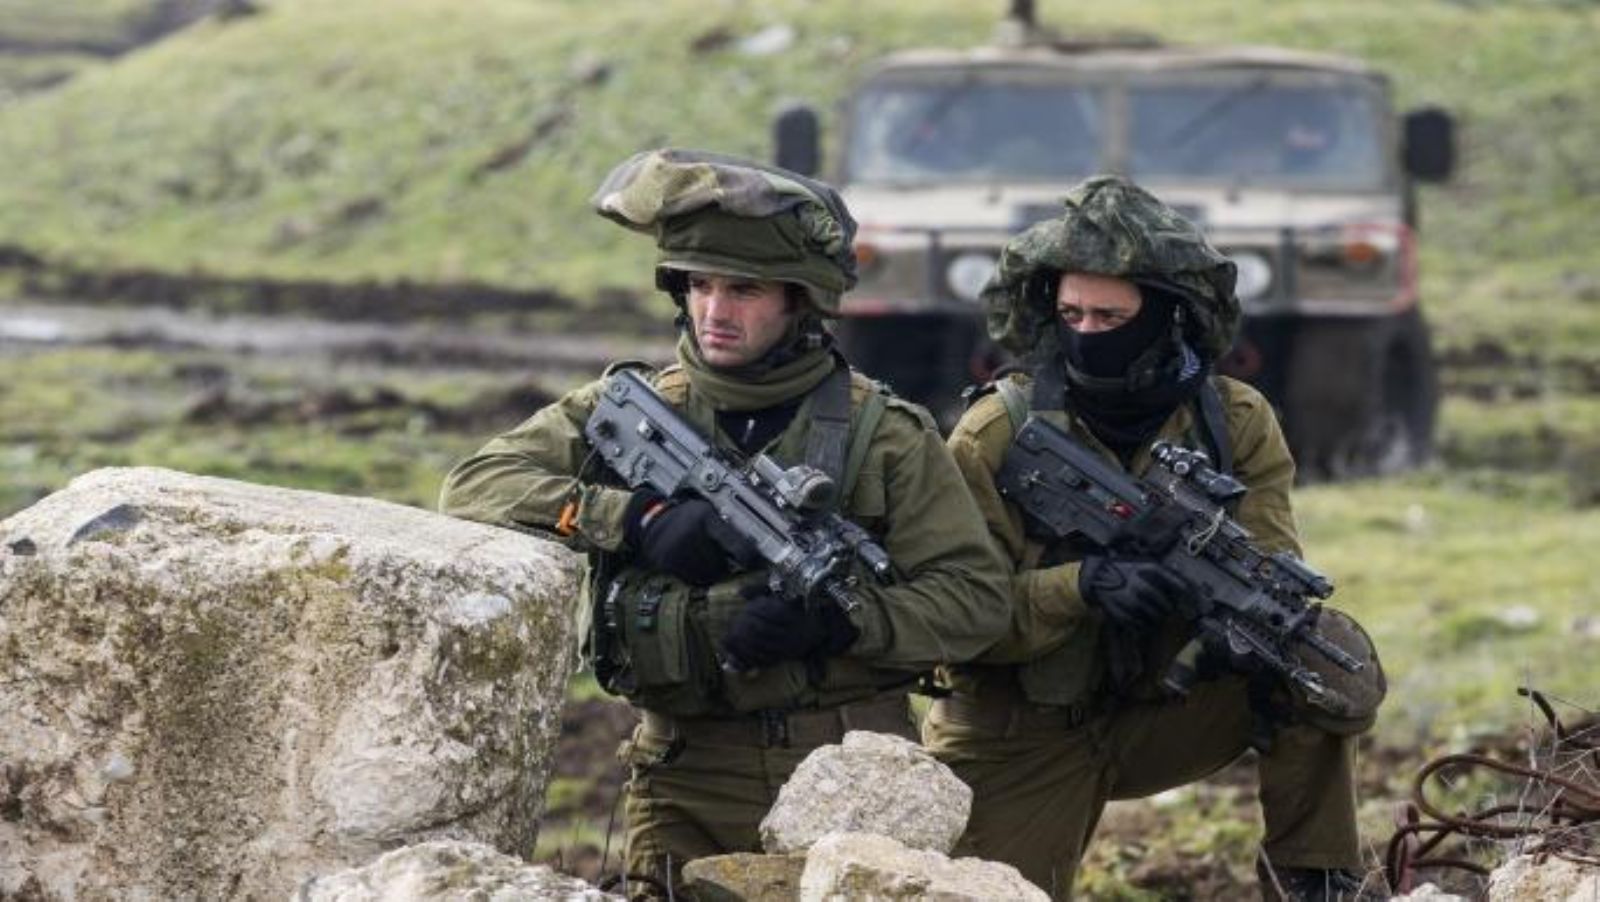 “هآرتس”: إسرائيل تتجه لزيادة ميزانية الأمن لتحسين قدراتها الهجومية